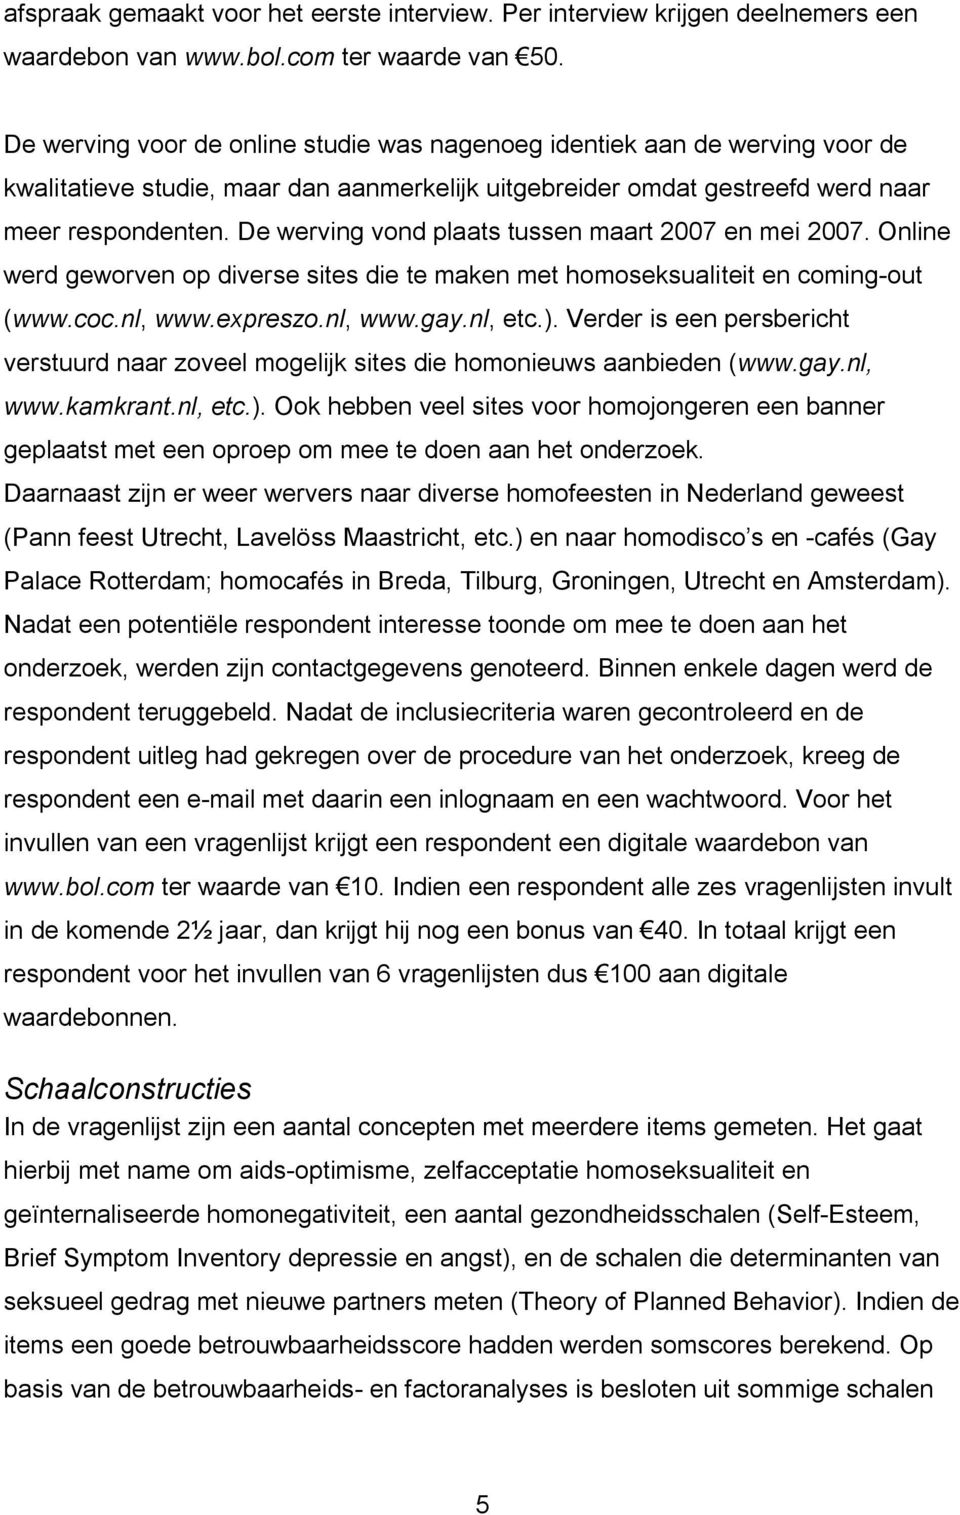 De werving vond plaats tussen maart 2007 en mei 2007. Online werd geworven op diverse sites die te maken met homoseksualiteit en coming-out (www.coc.nl, www.expreszo.nl, www.gay.nl, etc.).